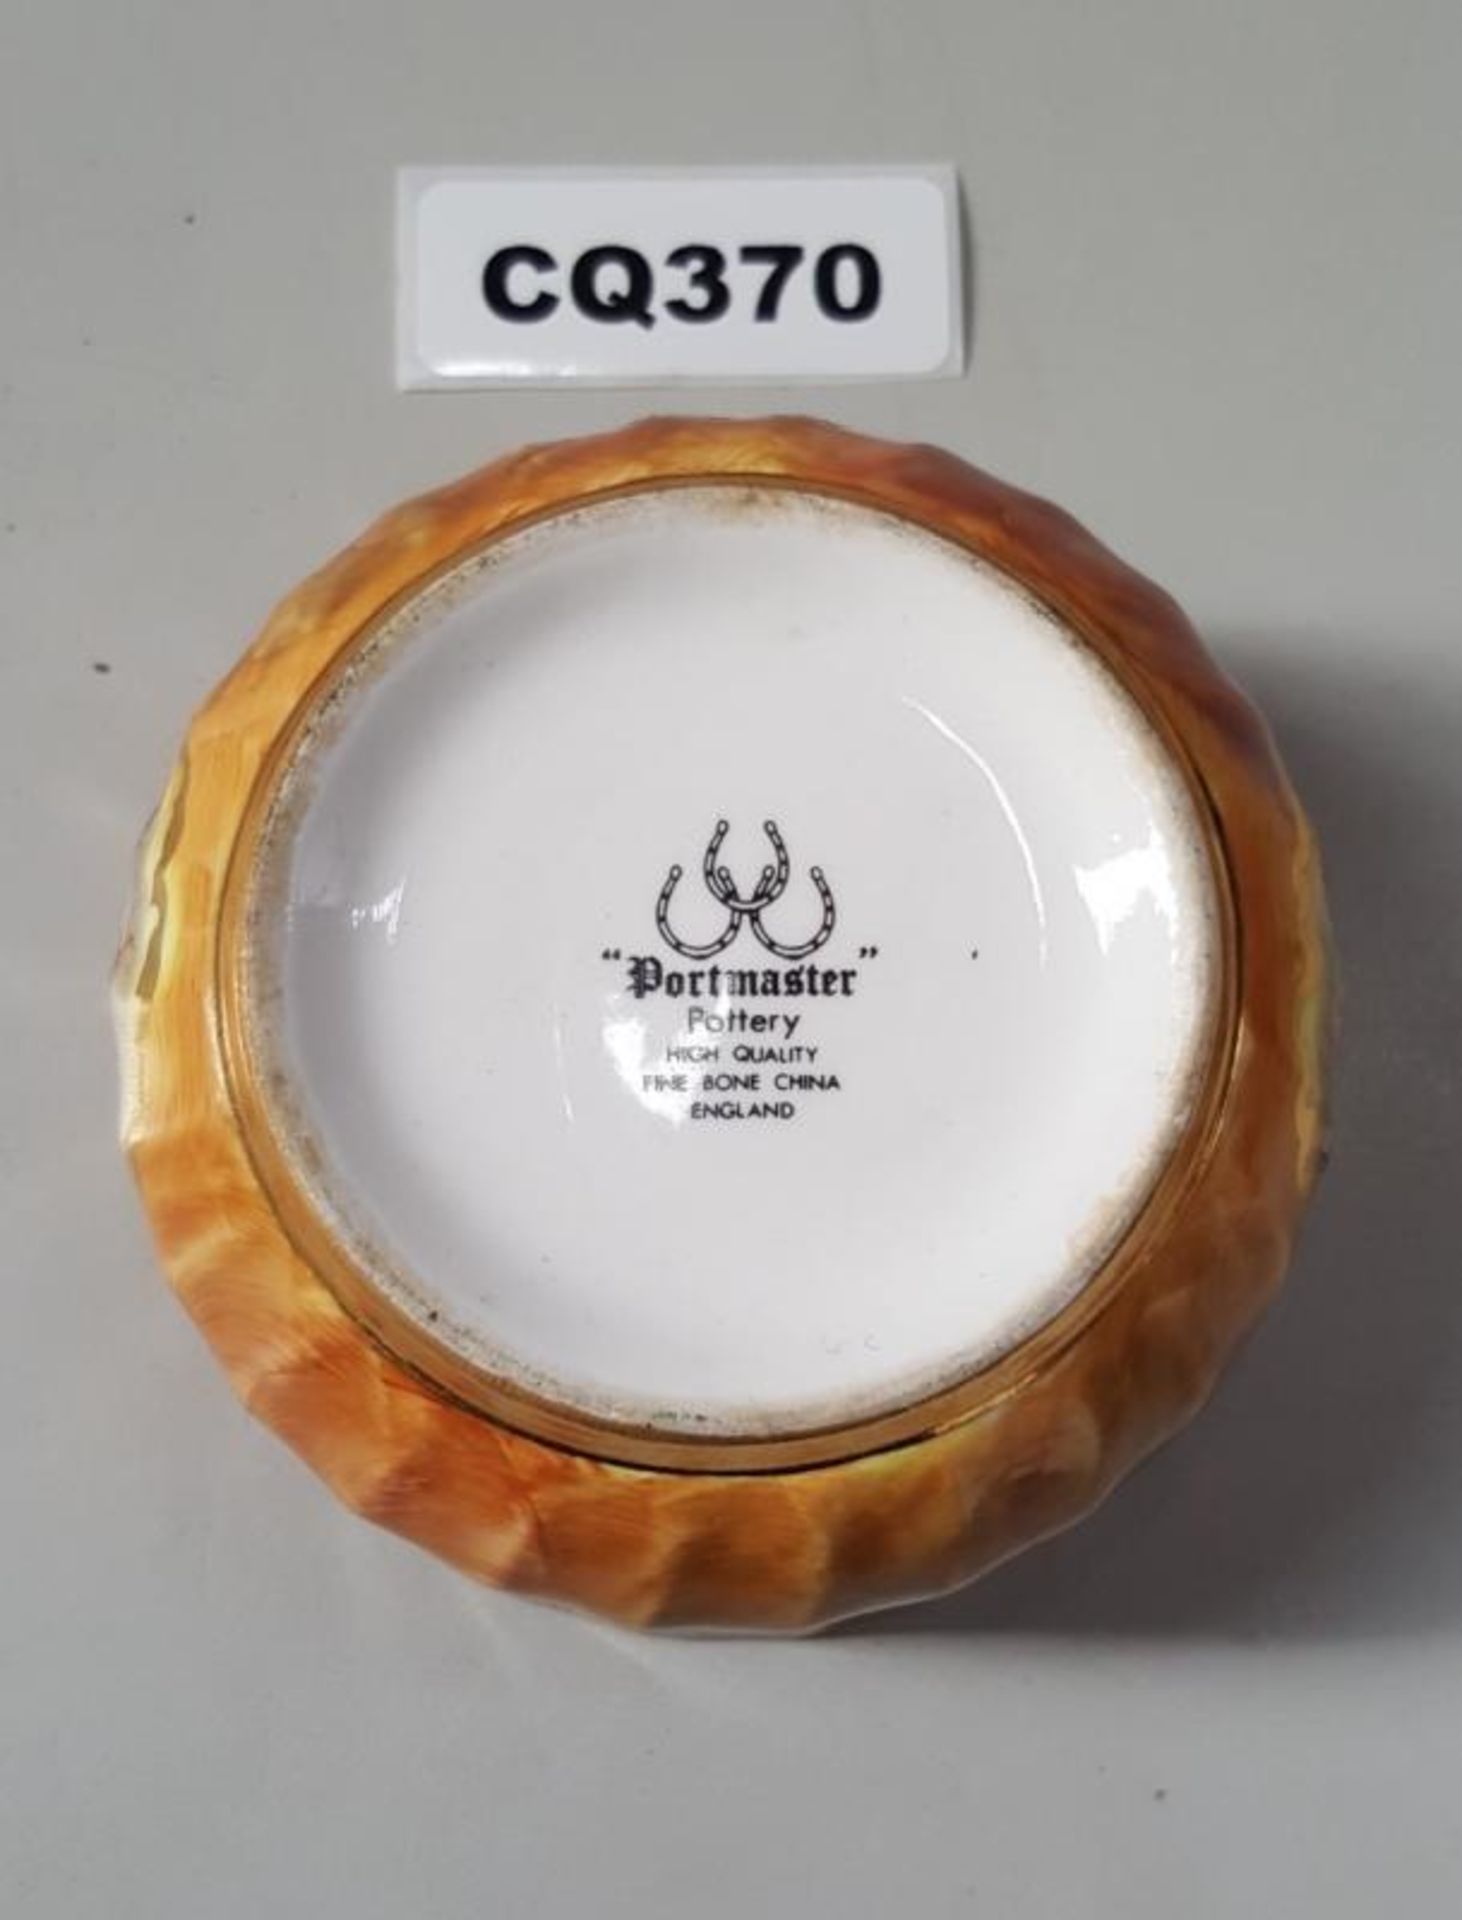 1 x Portmaster Bone China Small Orange Bowl - Ref CQ370 E - Dimensions: D10/H5cm- CL334 - Location: - Image 2 of 3